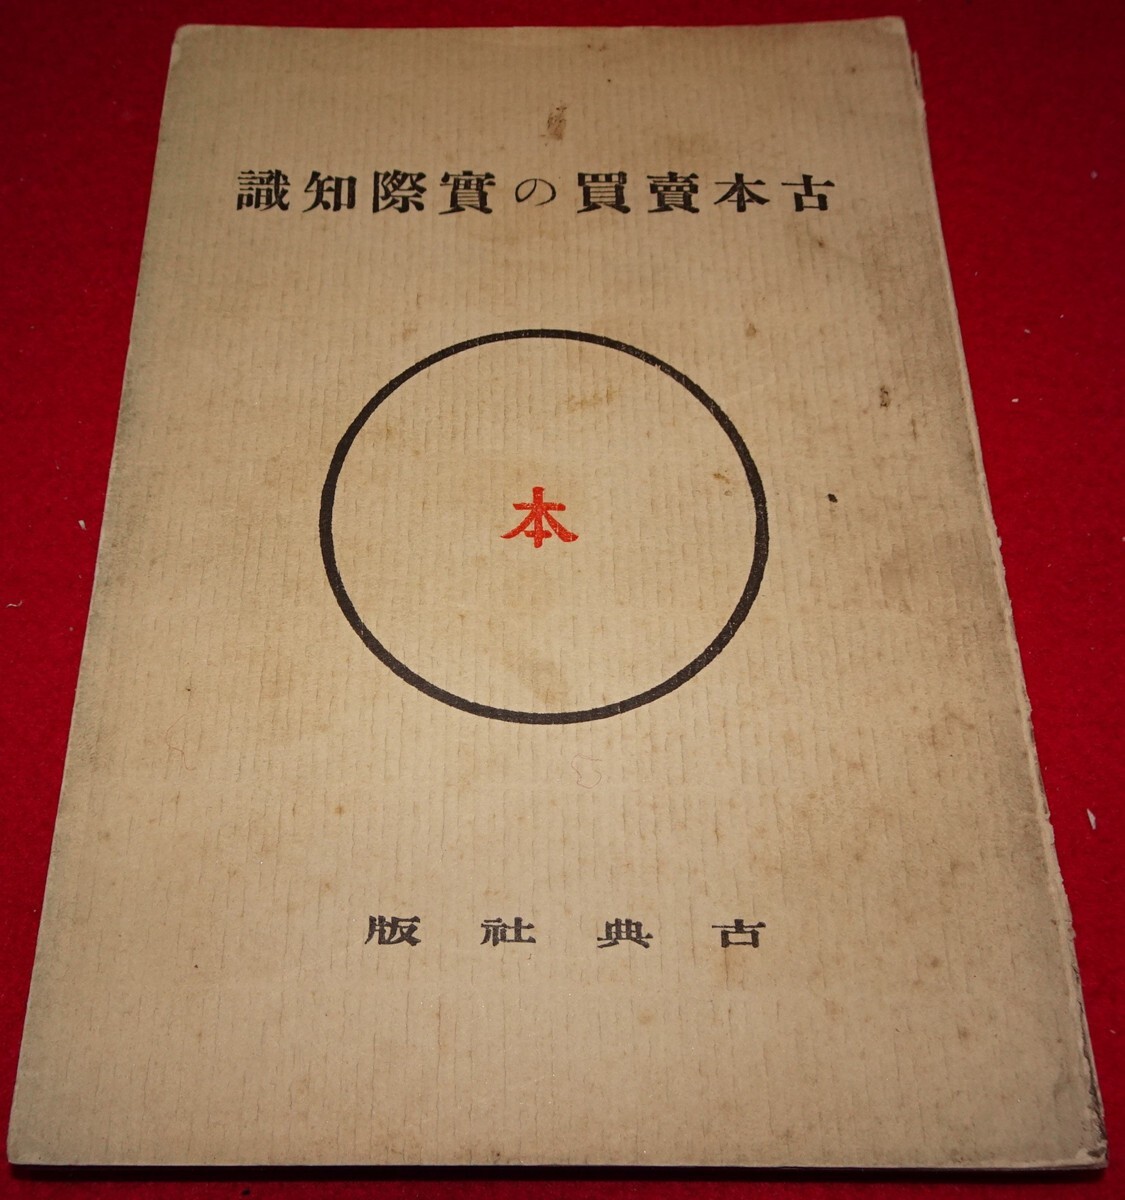 रेयरबुकक्योटो सी22 प्रयुक्त पुस्तकों को खरीदने और बेचने पर युद्ध-पूर्व वास्तविक ज्ञान इप्पेई ओशिमा कोकुसाई-शा 1932 कैटलॉग सुंग संस्करण मूल संस्करण सुकियाकी ज़ेन मोंक ड्राई लैंडस्केप पेंटिंग्स ऑफ़ ब्यूटीफुल वीमेन सेरामिक्स समुराई पेंटिंग्स, चित्रकारी, जापानी पेंटिंग, फूल और पक्षी, पक्षी और जानवर